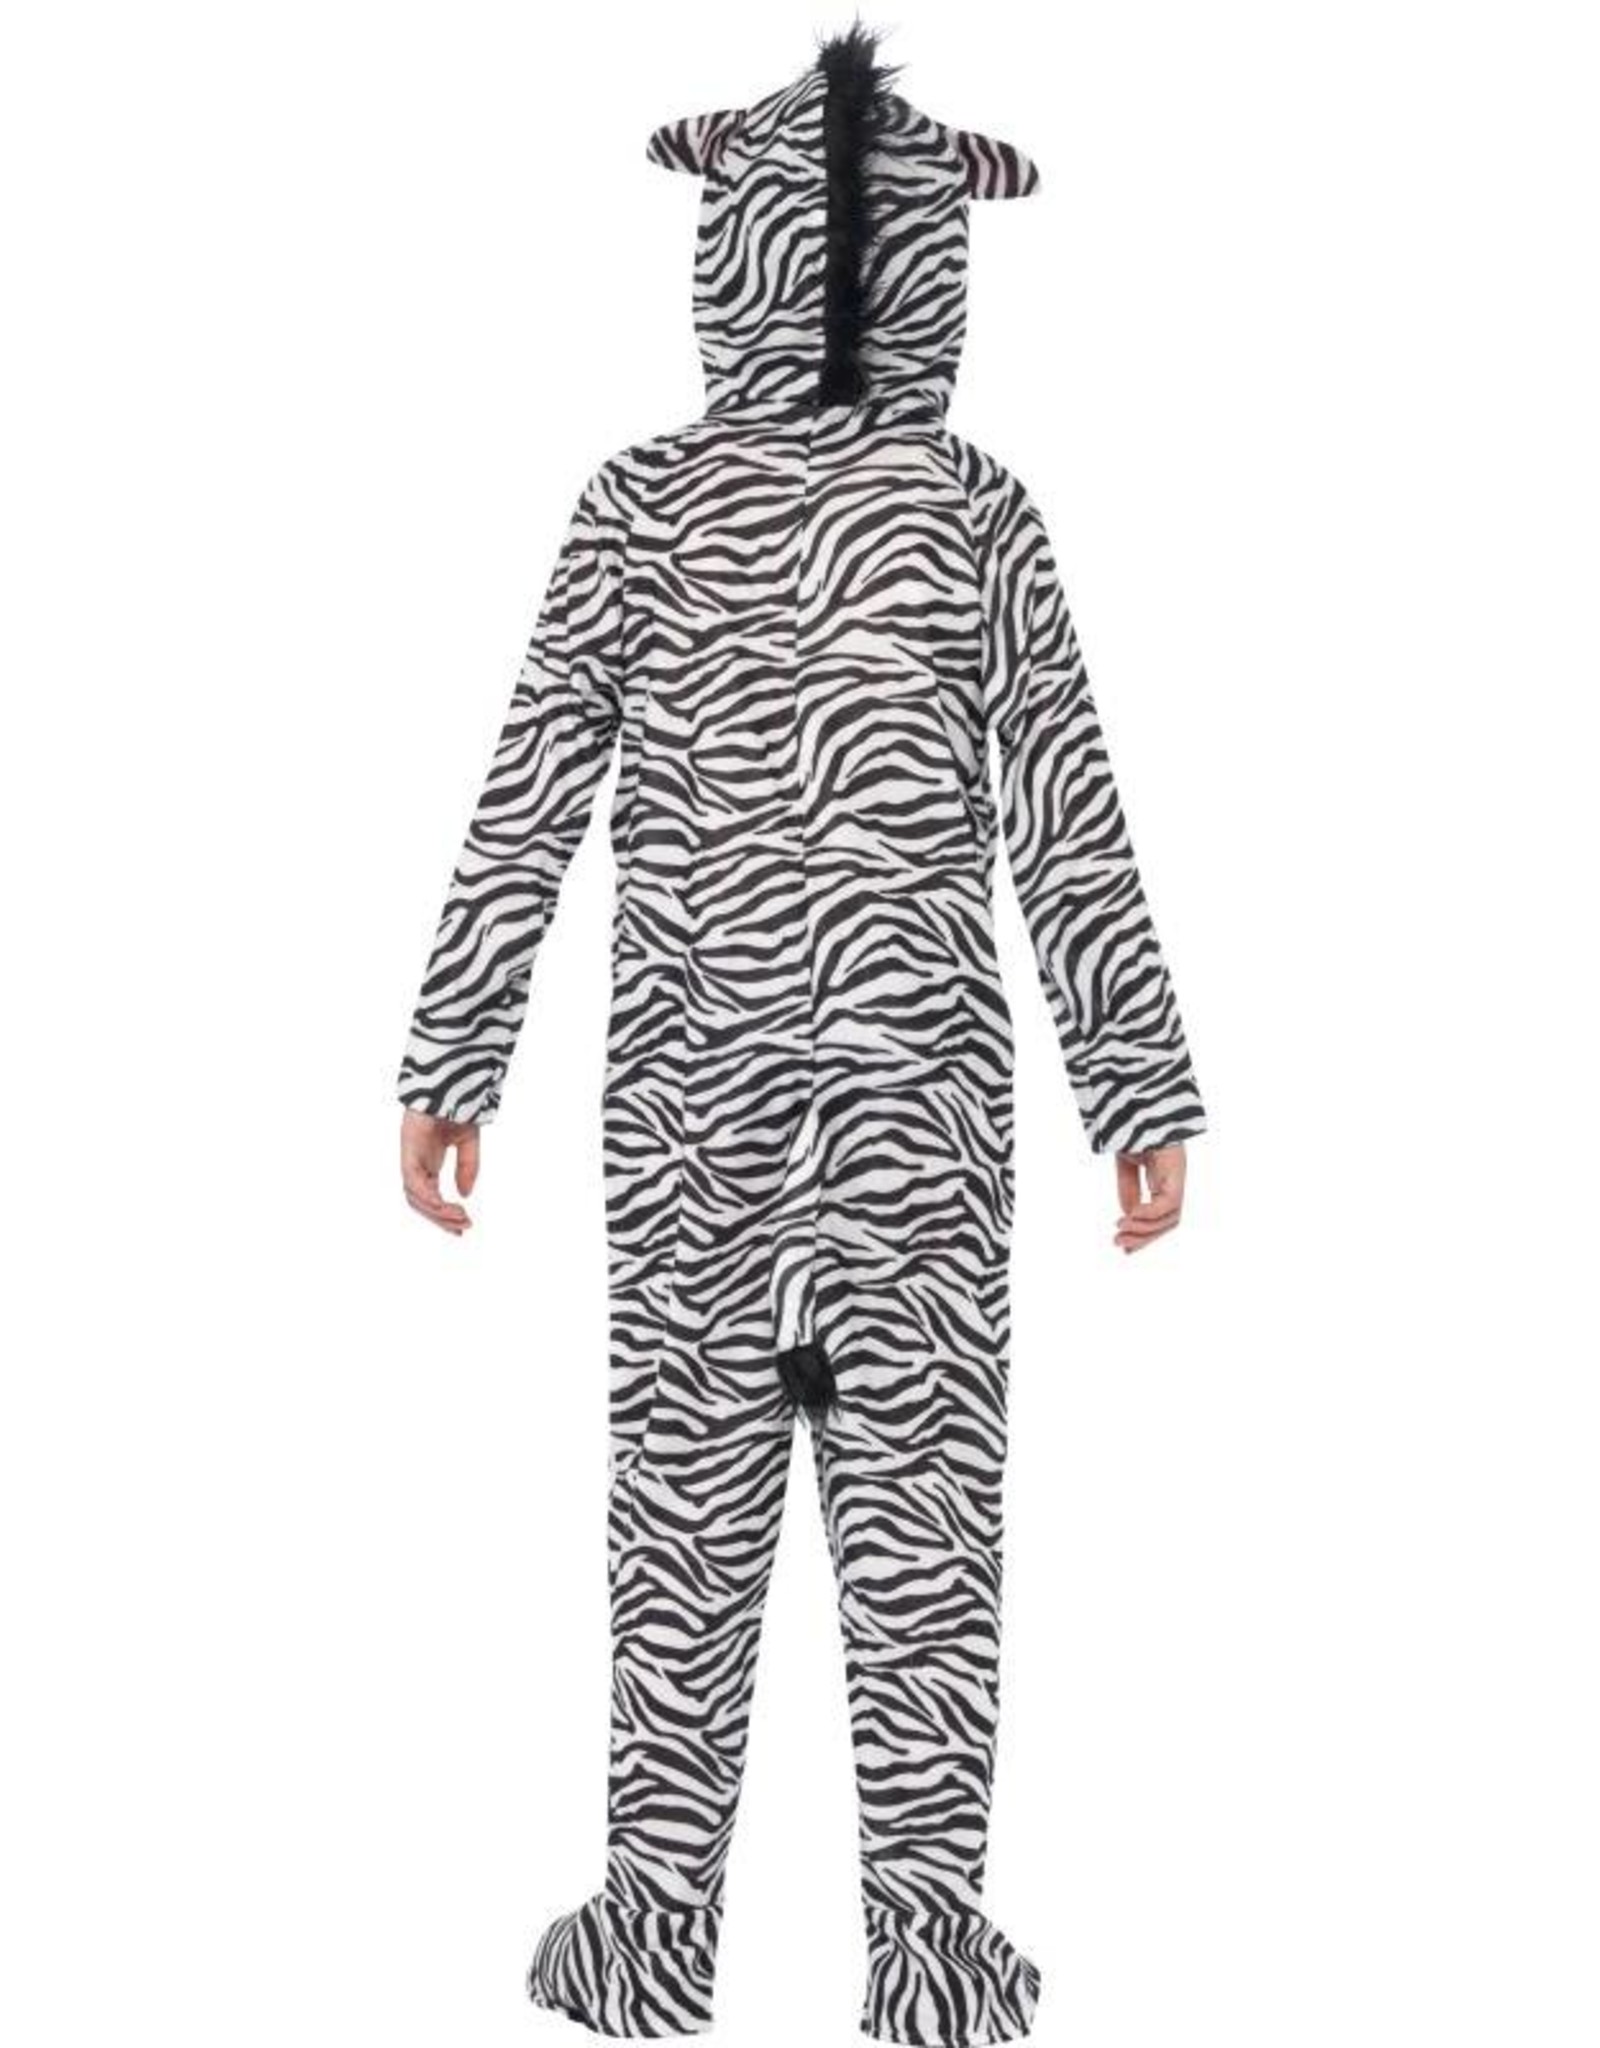 Zebra Kostuum, Kind